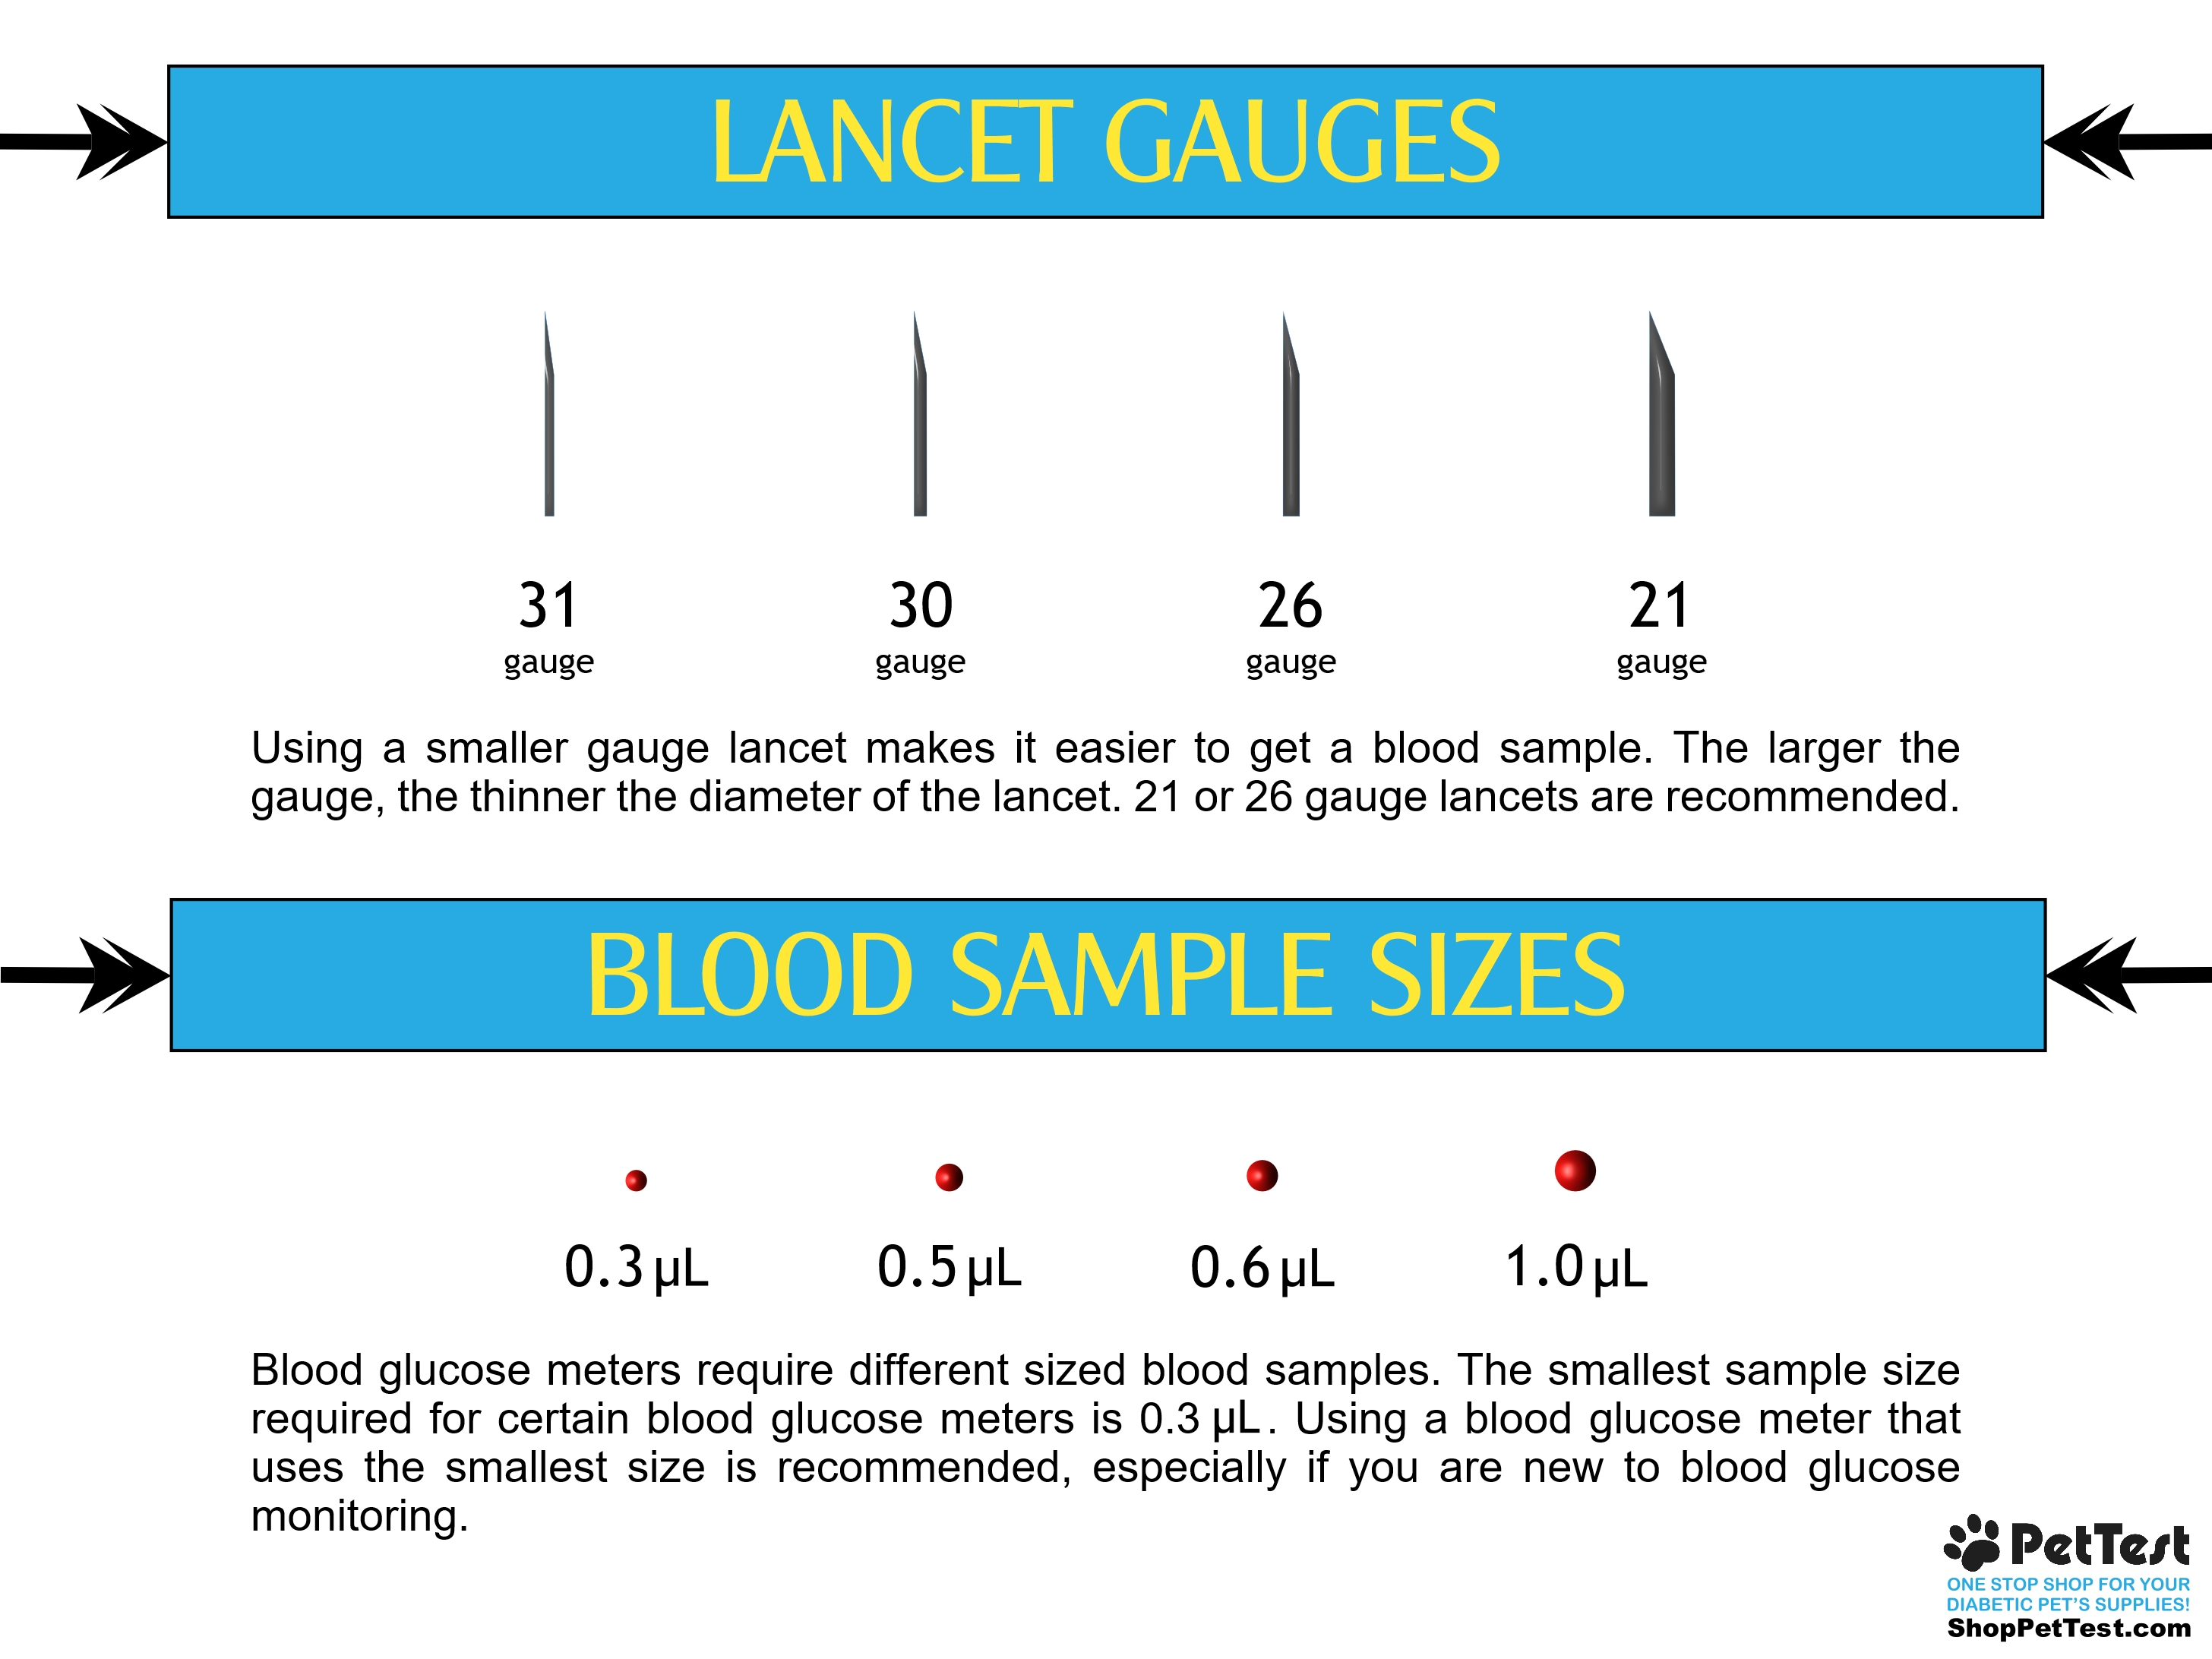 HNF Lance Gauges and Blood Sample Sizes for blog mtm